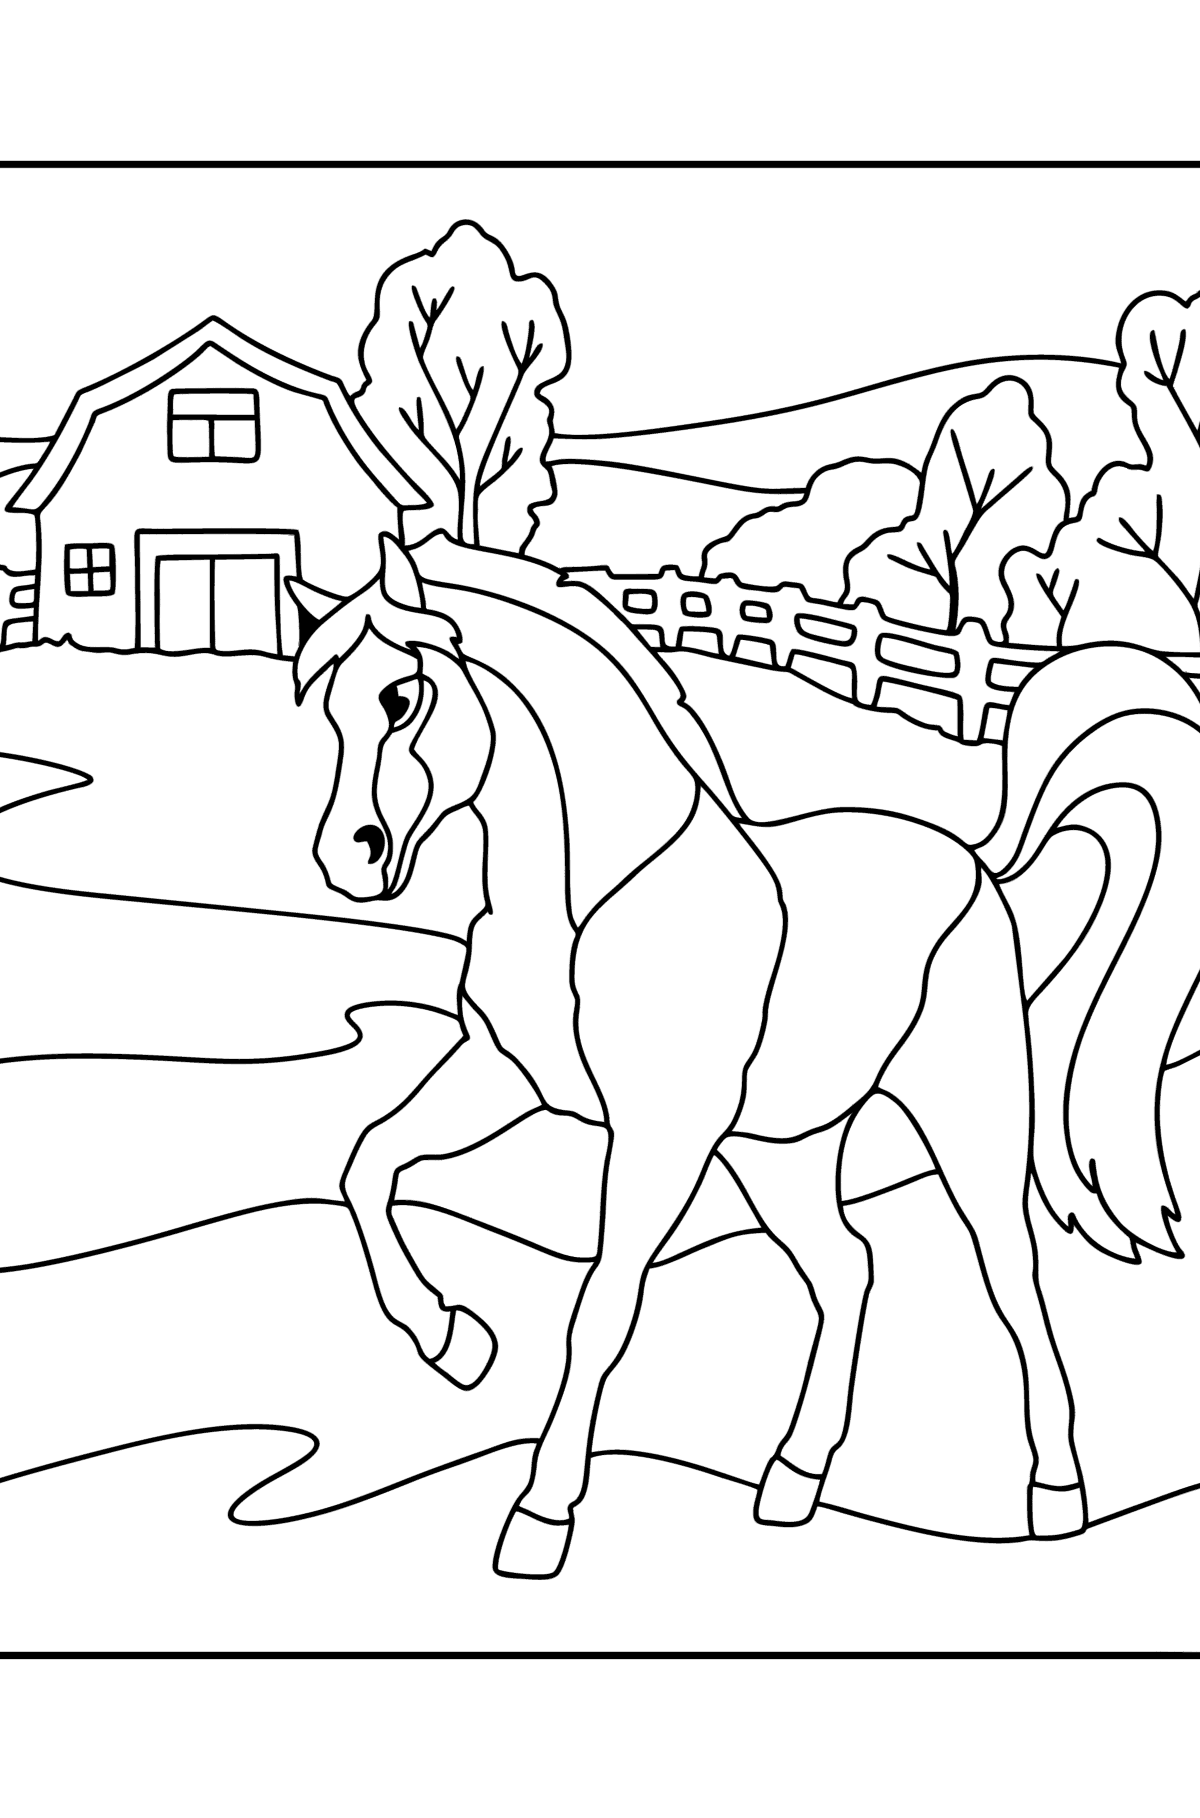 Kleurplaat Paard op de boerderij - kleurplaten voor kinderen